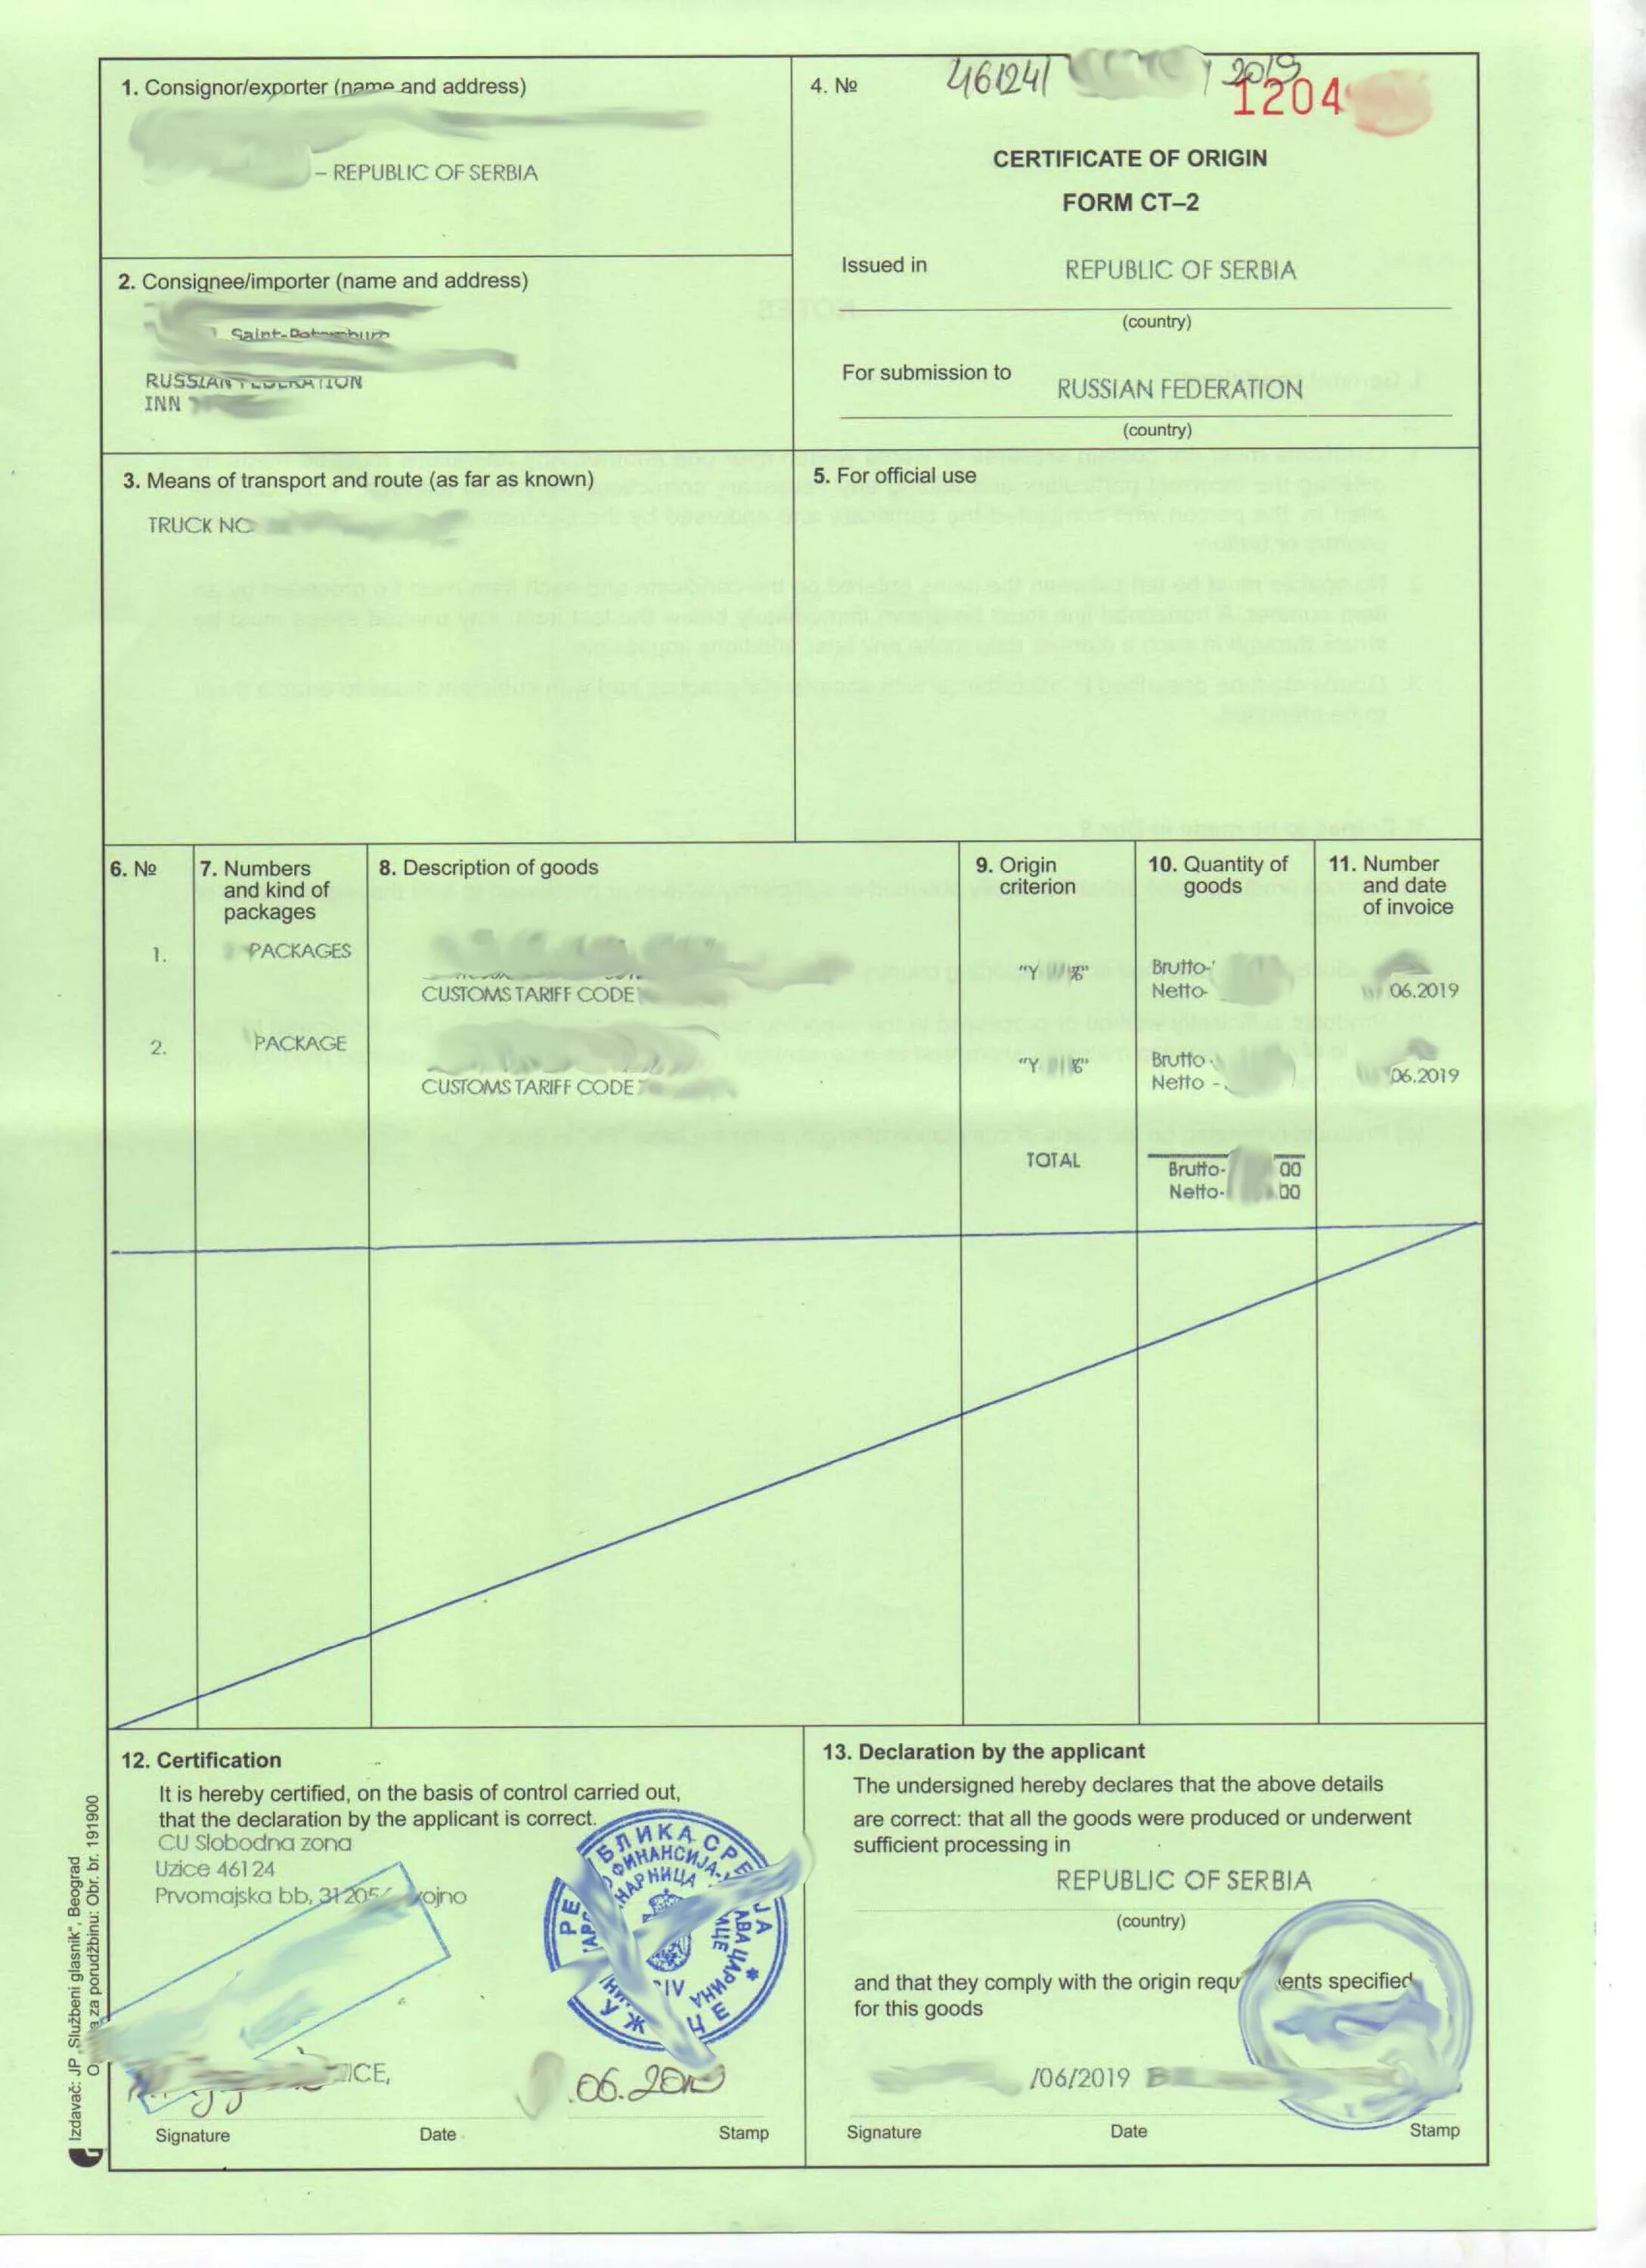 Сертификат происхождения Сербия ст 2. Сертификат происхождения ст-2 Сербия образец. Ст-3 сертификат происхождения Иран. Сертификаты происхождения товаров форма а, ст-1, ст-2.